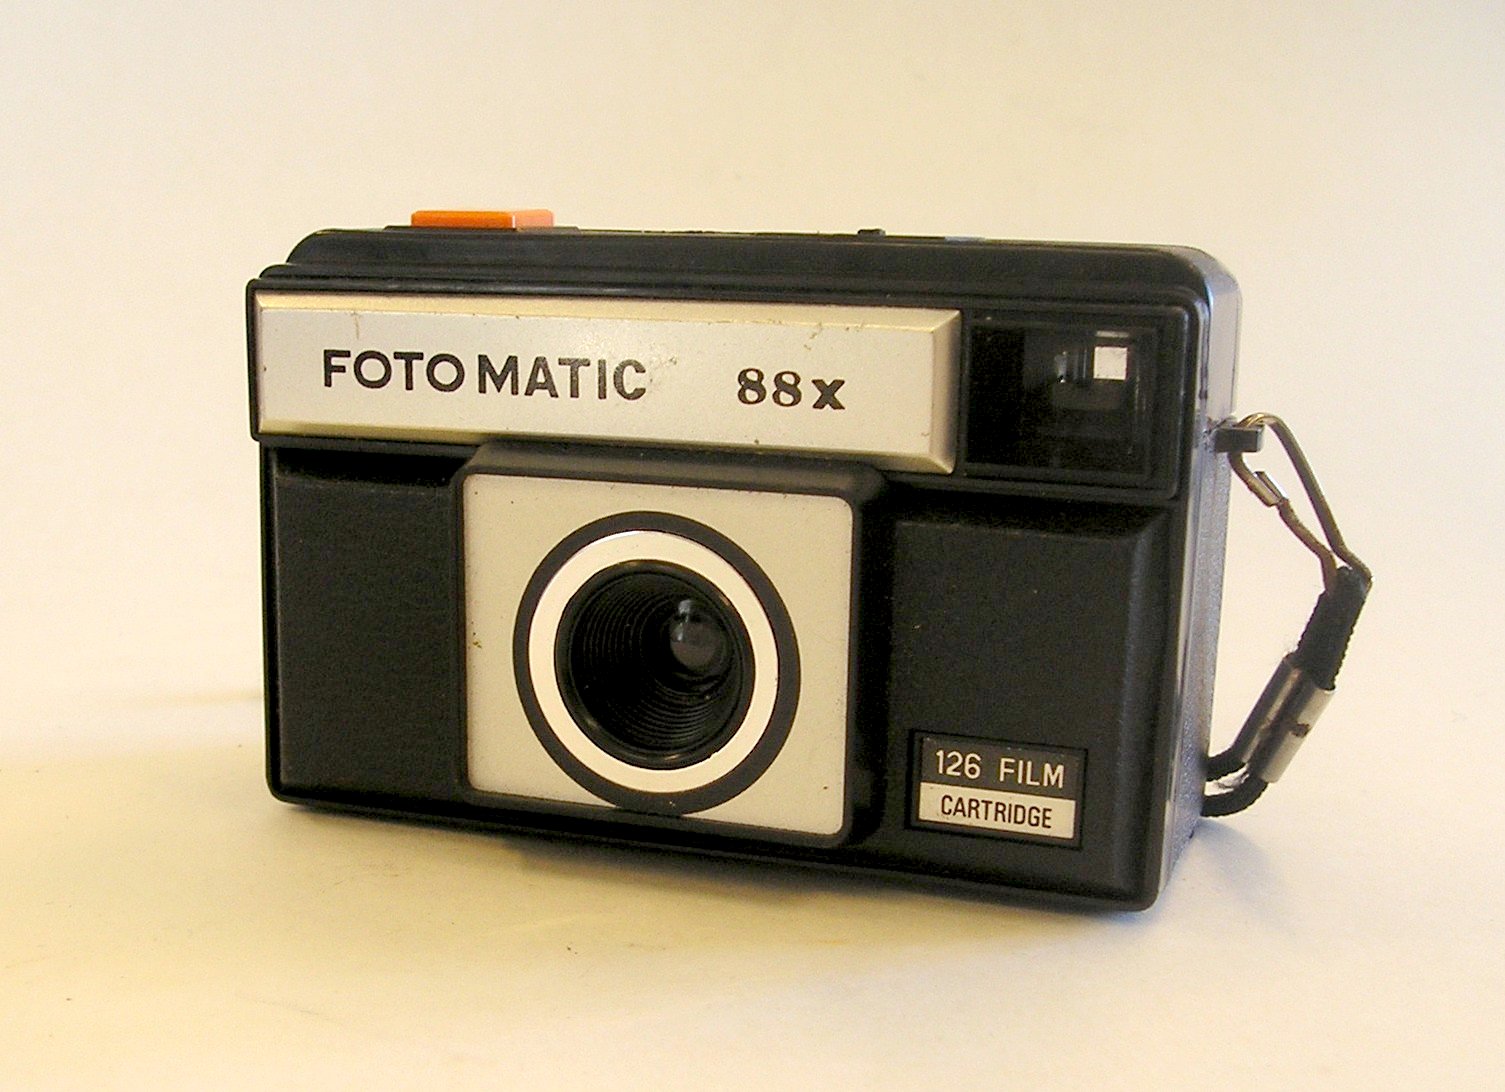 Fotomatic 88 X